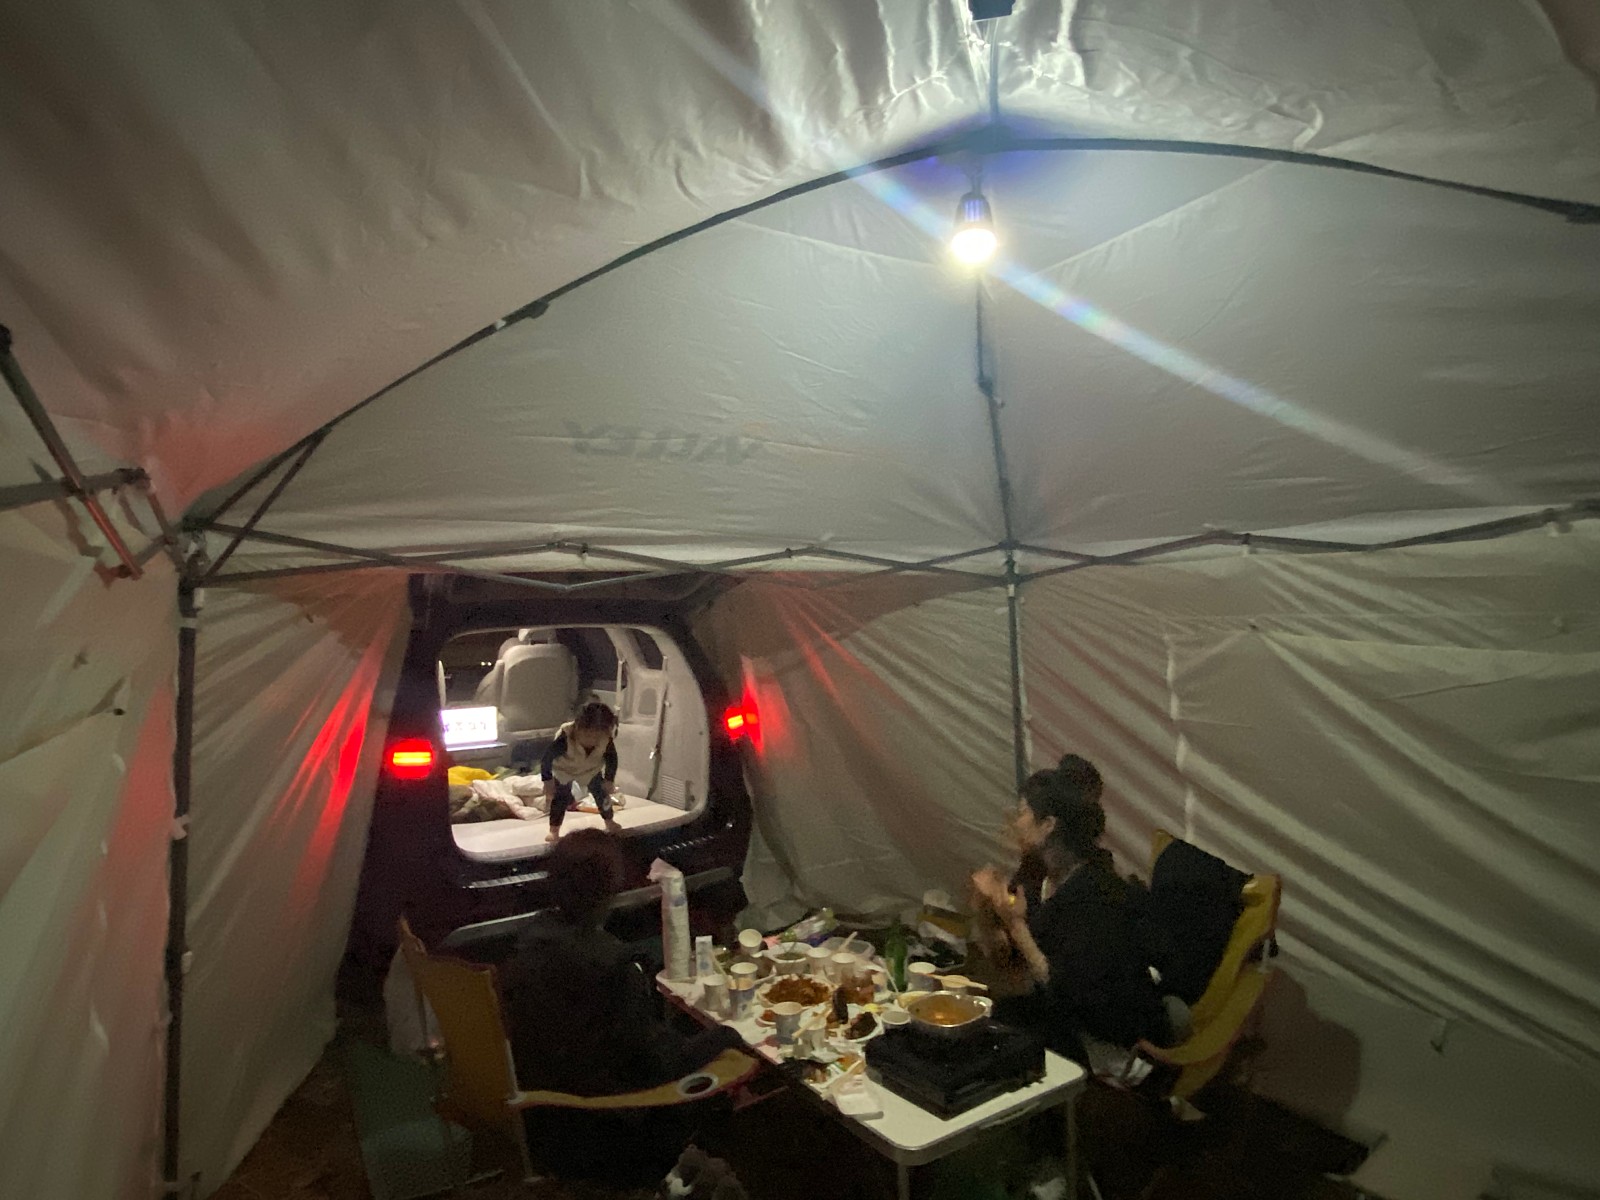 텐트, 방수포, 캠핑, 테이블이(가) 표시된 사진

자동 생성된 설명